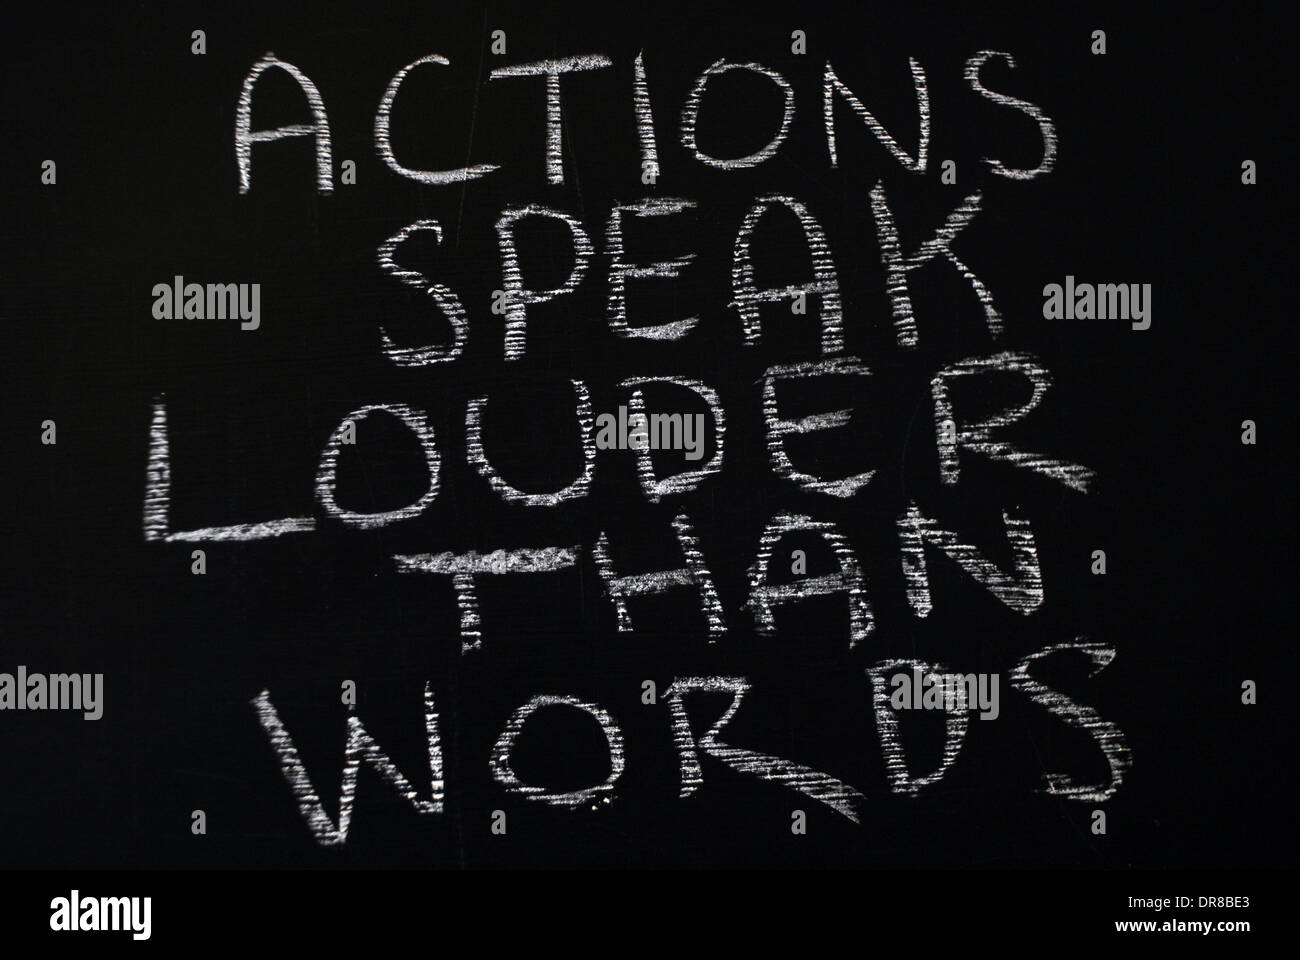 Chalk scrittura - le azioni parlano più forte delle parole. - Parole scritte sulla lavagna. Foto Stock